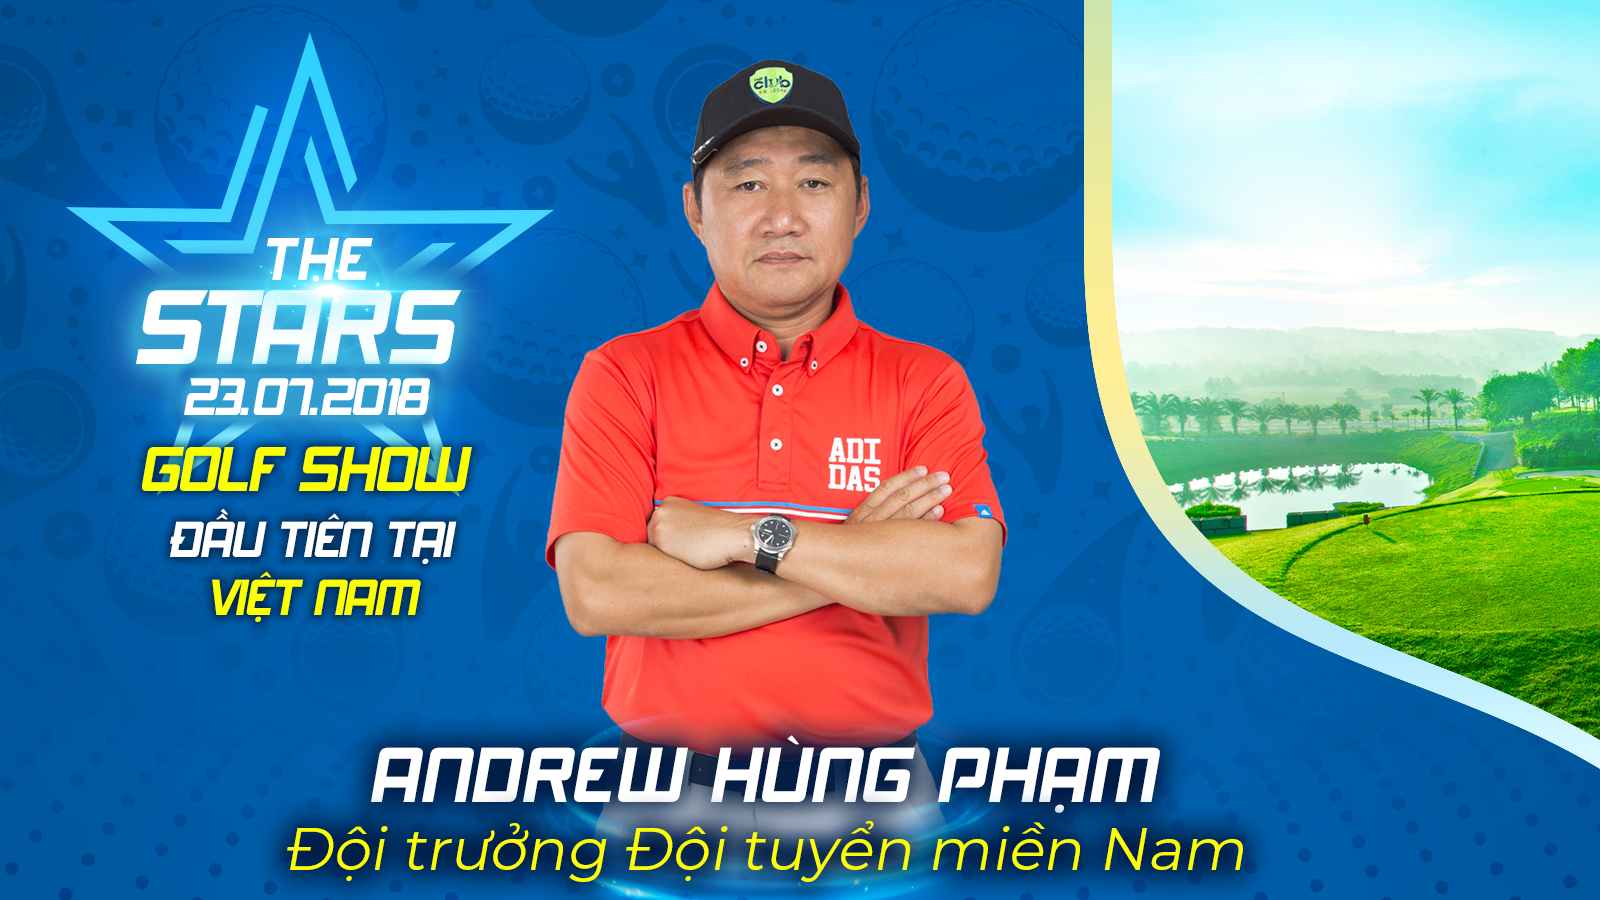 Andrew Hùng Phạm: Sự nghiệp chơi golf gói gọn trong 3 chữ “T”